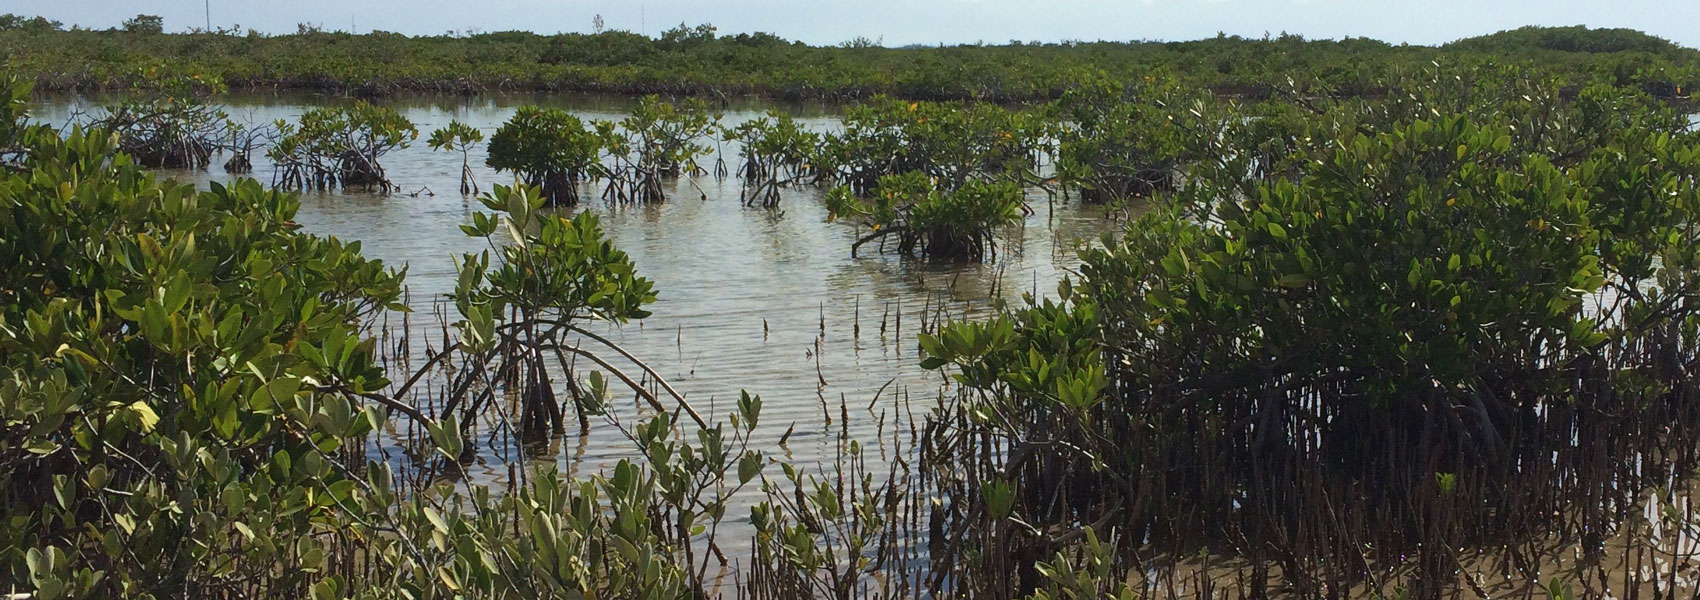 Mangroves off of Blimp Road, Cudjoe Key